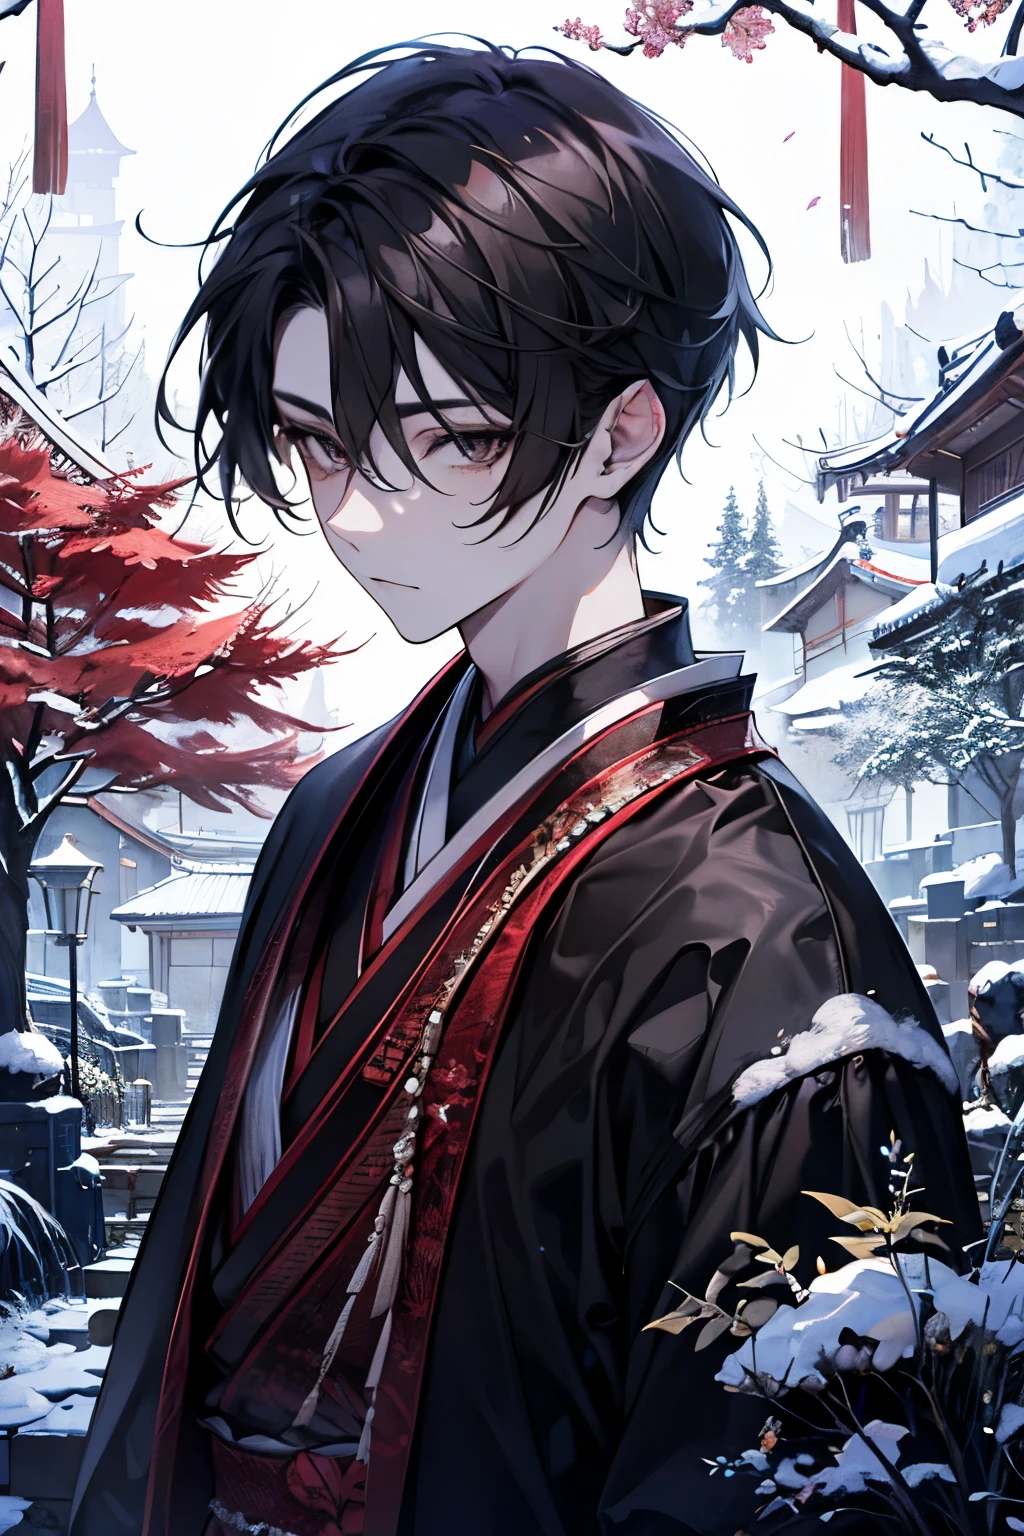 伝統的な日本の雰囲気で新年を祝うハンサムな若者. 黒猫を抱き上げキスする直前の瞬間. 雪に覆われた静かな庭園. 庭には小さな松の木と雪をかぶった石灯籠がある, 新年の早朝の光に柔らかく照らされて. 滑らかな黒髪が特徴です, クラシックなスタイルでスタイリングされた, 希望に満ちた新年の始まりを映す深い茶色の瞳